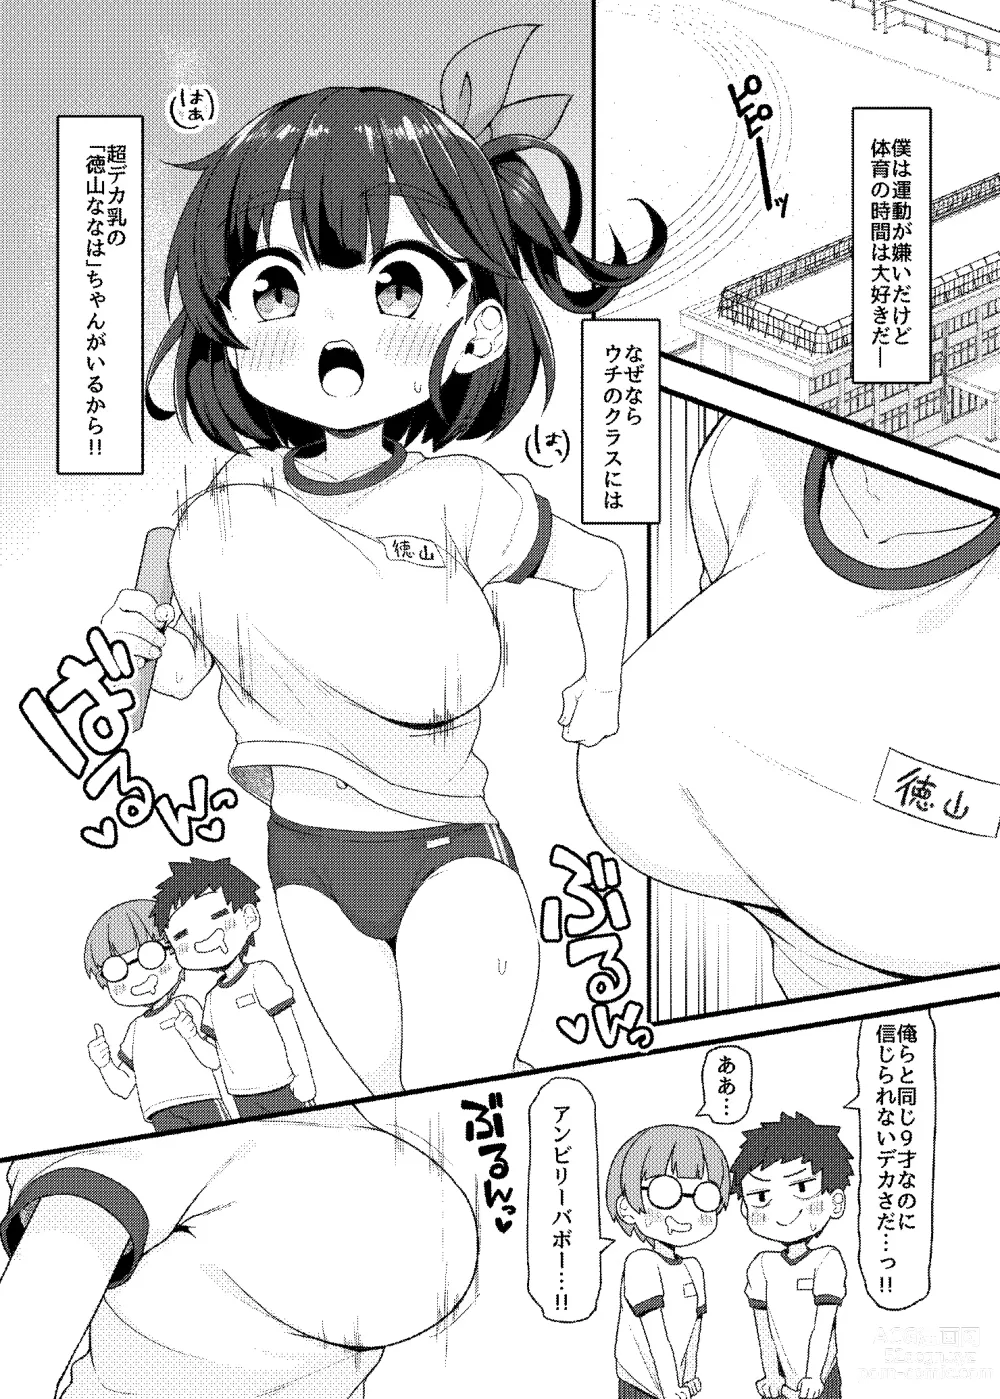 Page 3 of doujinshi Dekasugi Shougakusei Nanaha-chan